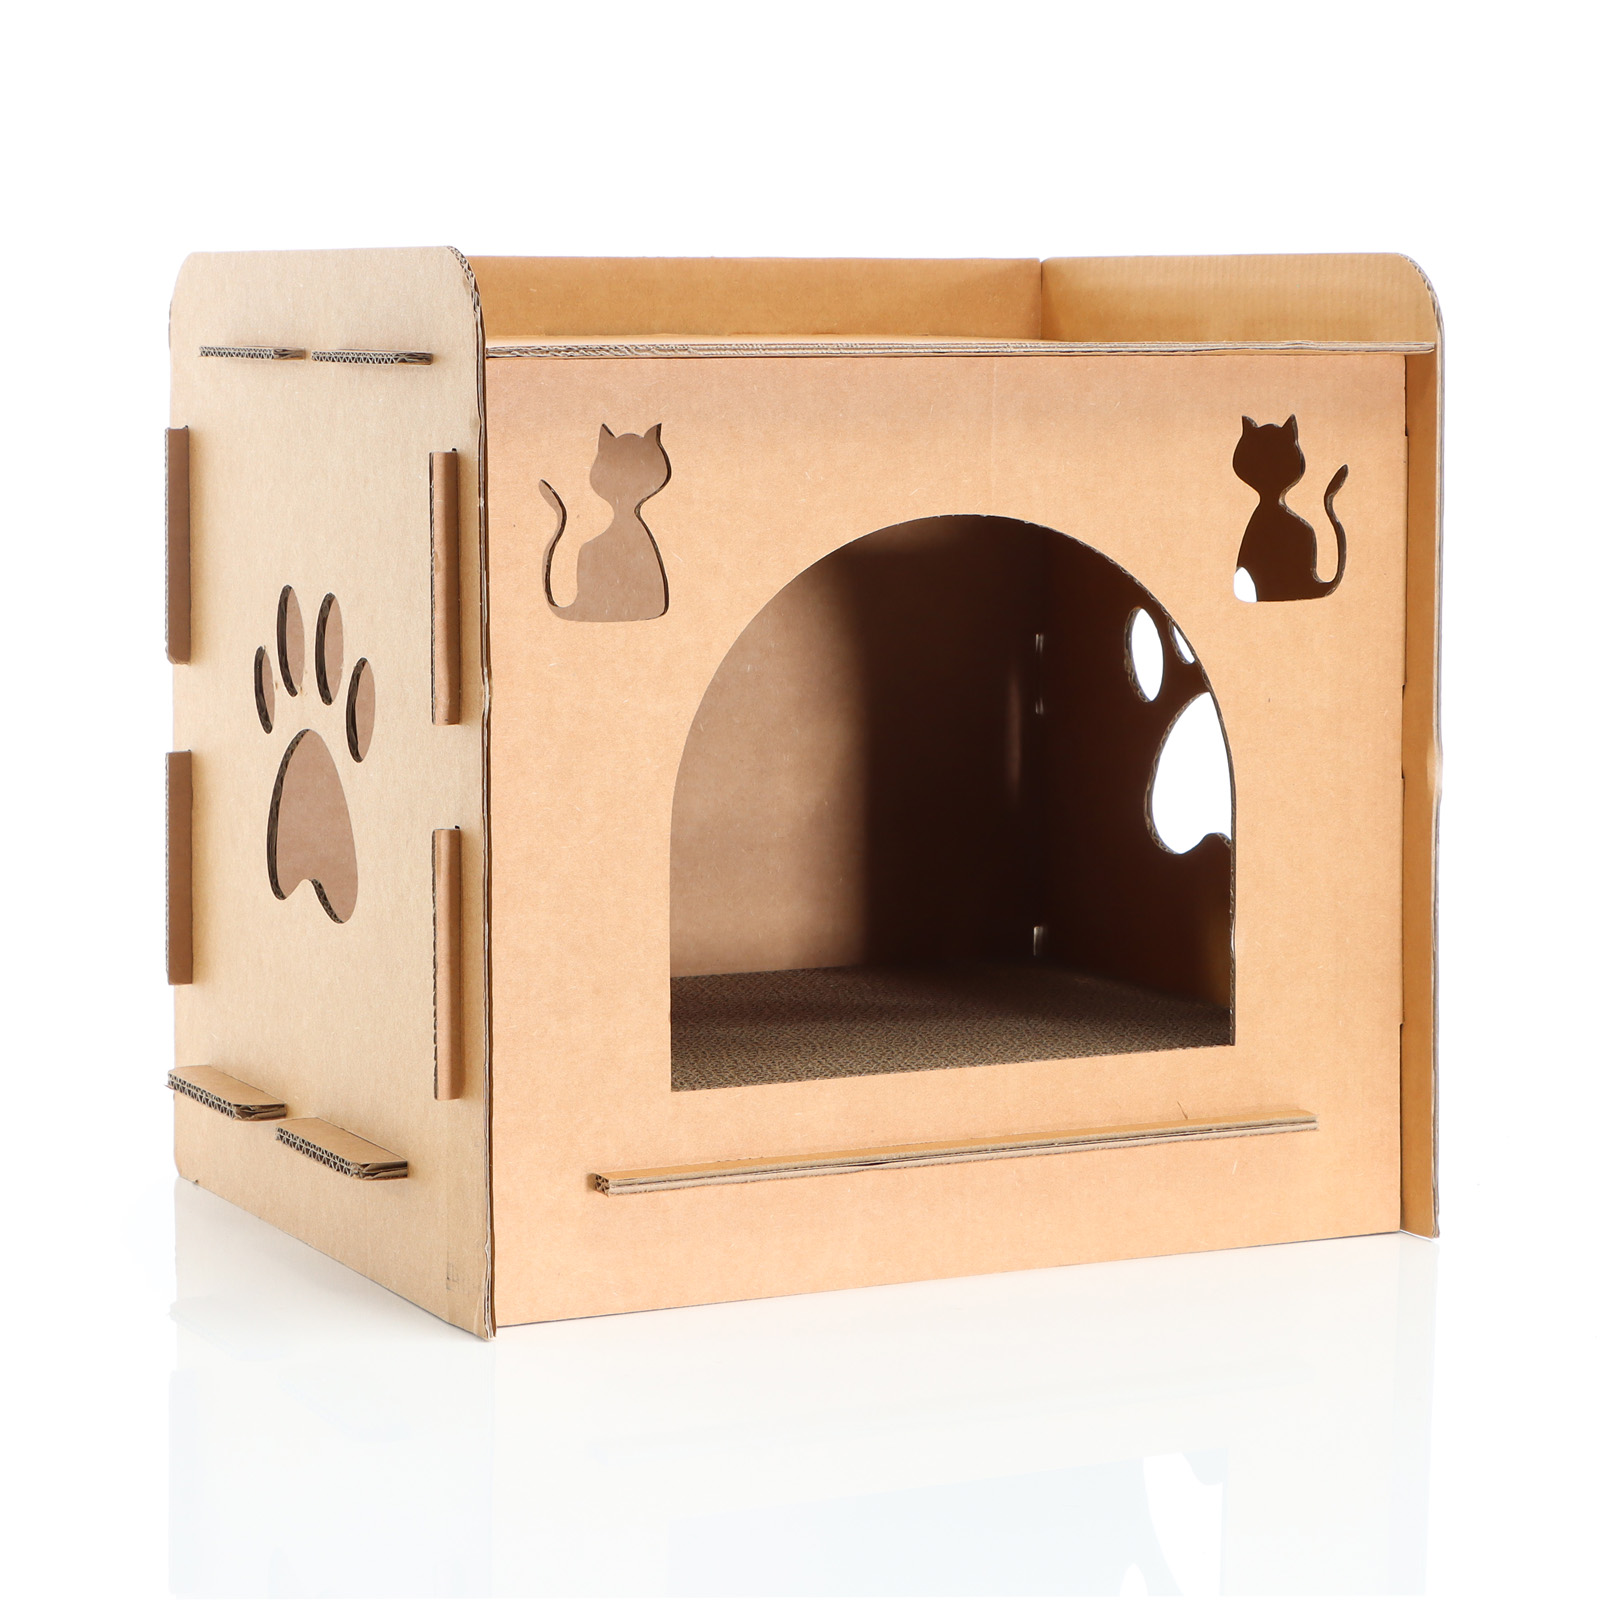 Katzenhöhle Katzenhaus aus Pappe Katzenhütte Karton Stecksystem